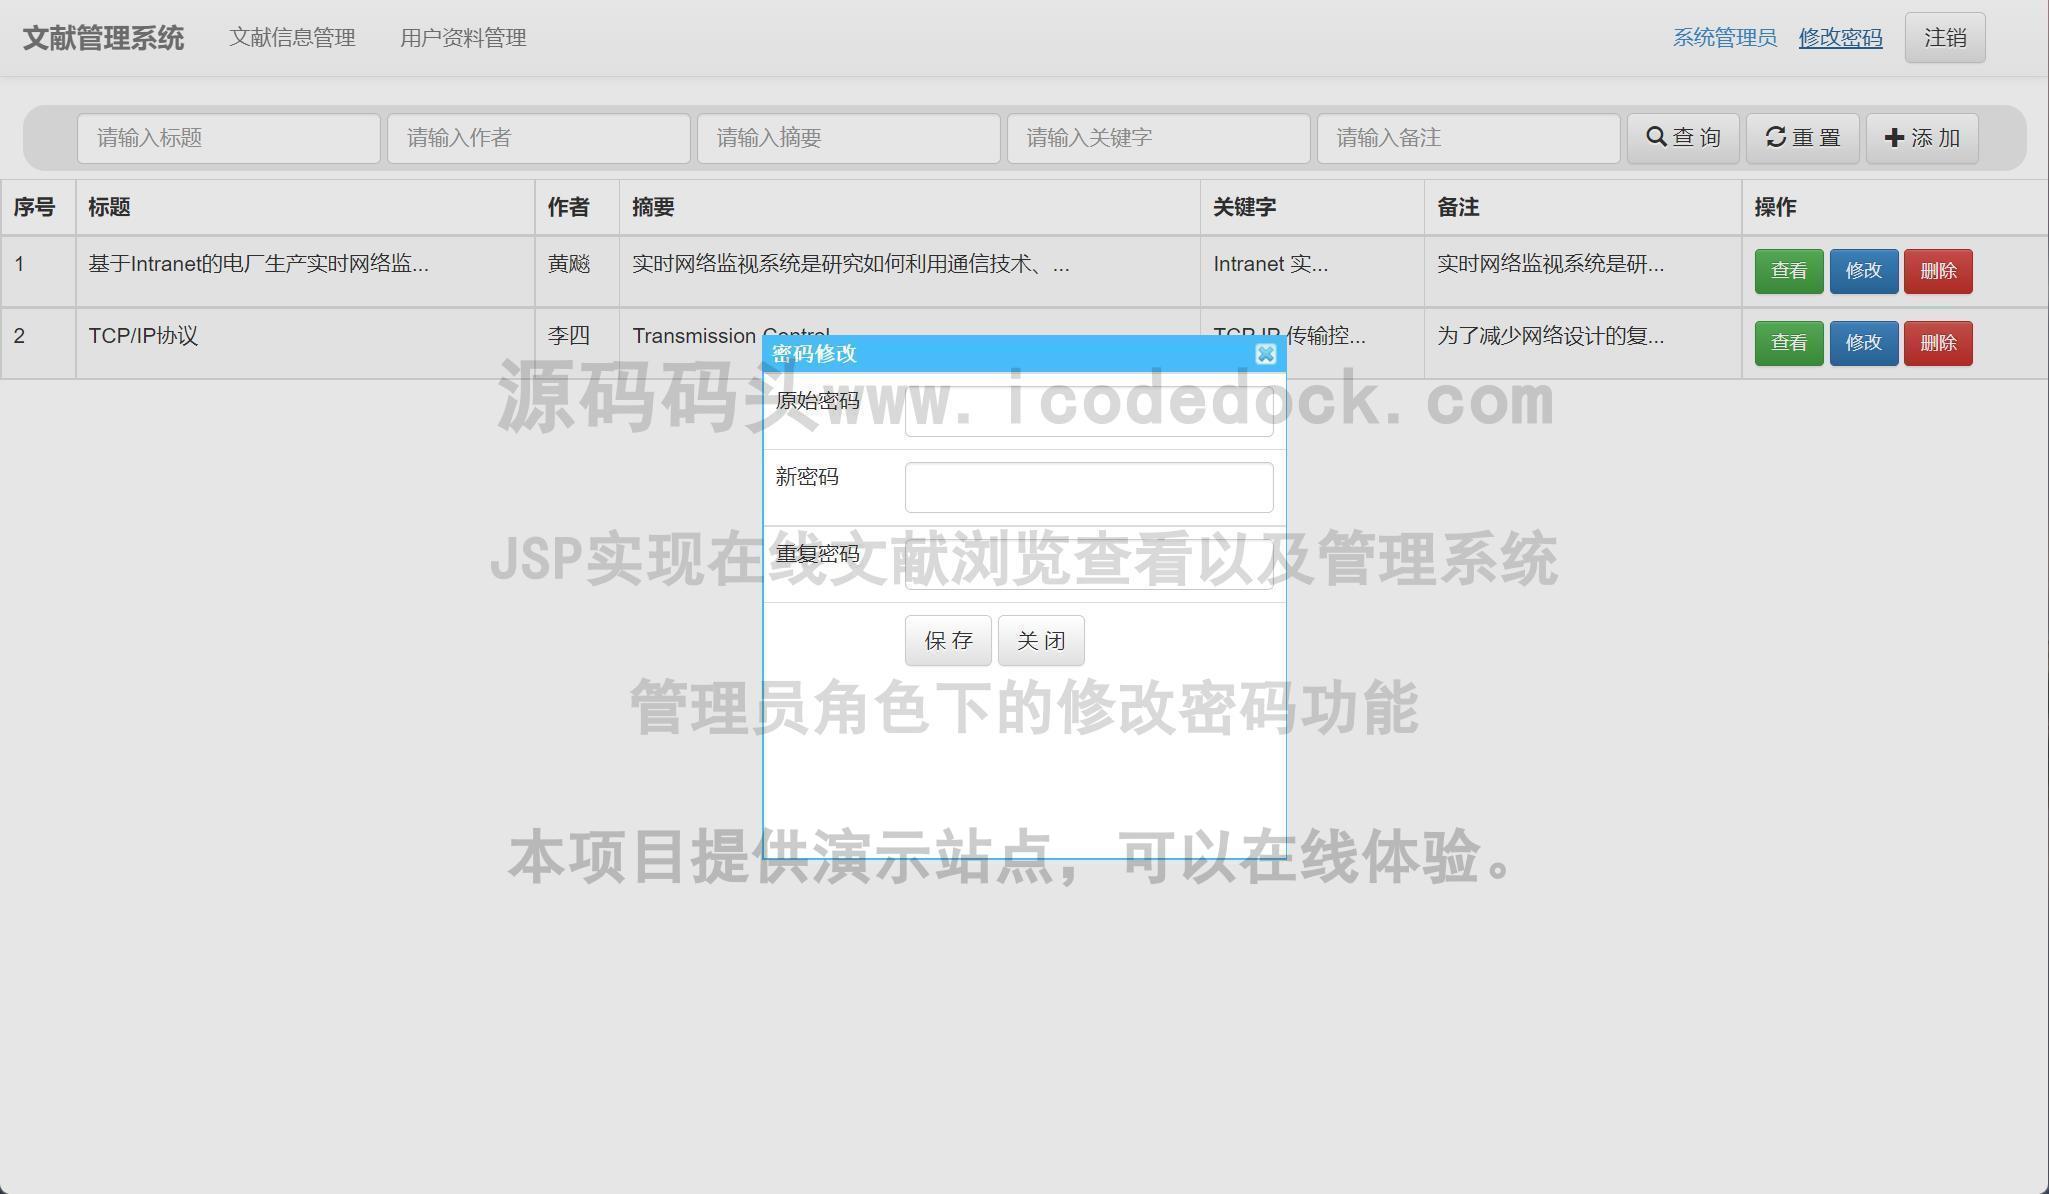 源码码头-JSP实现在线文献浏览查看以及管理系统-管理员角色-修改密码